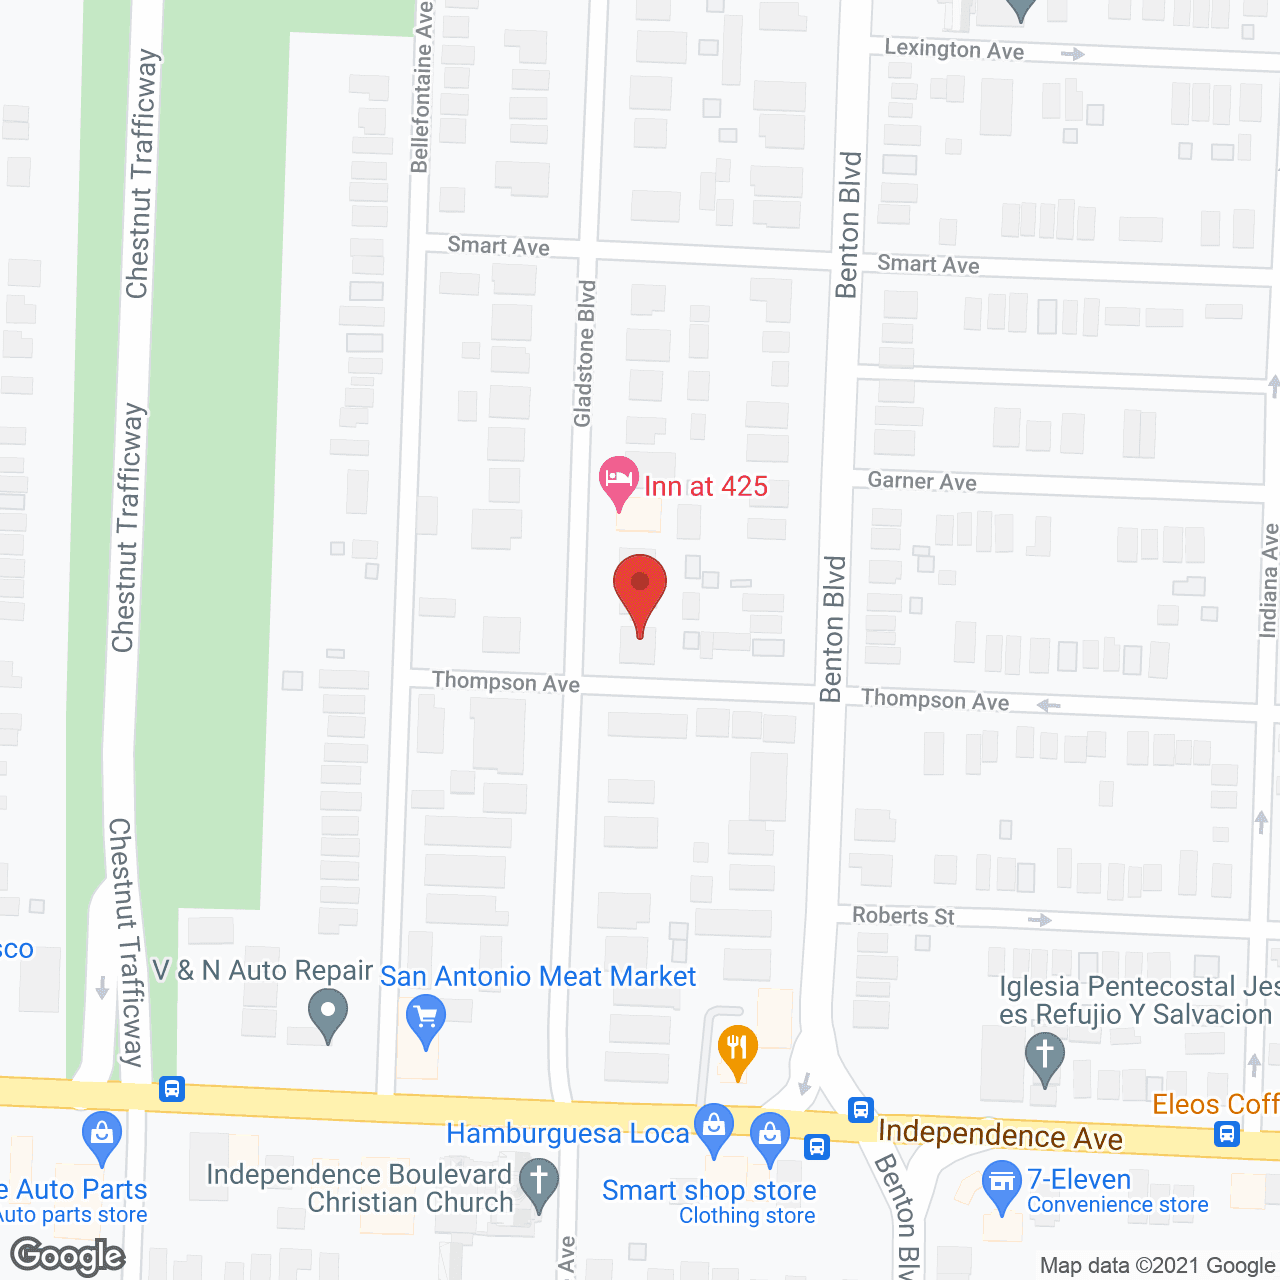 Gladstone Nursing Home in google map